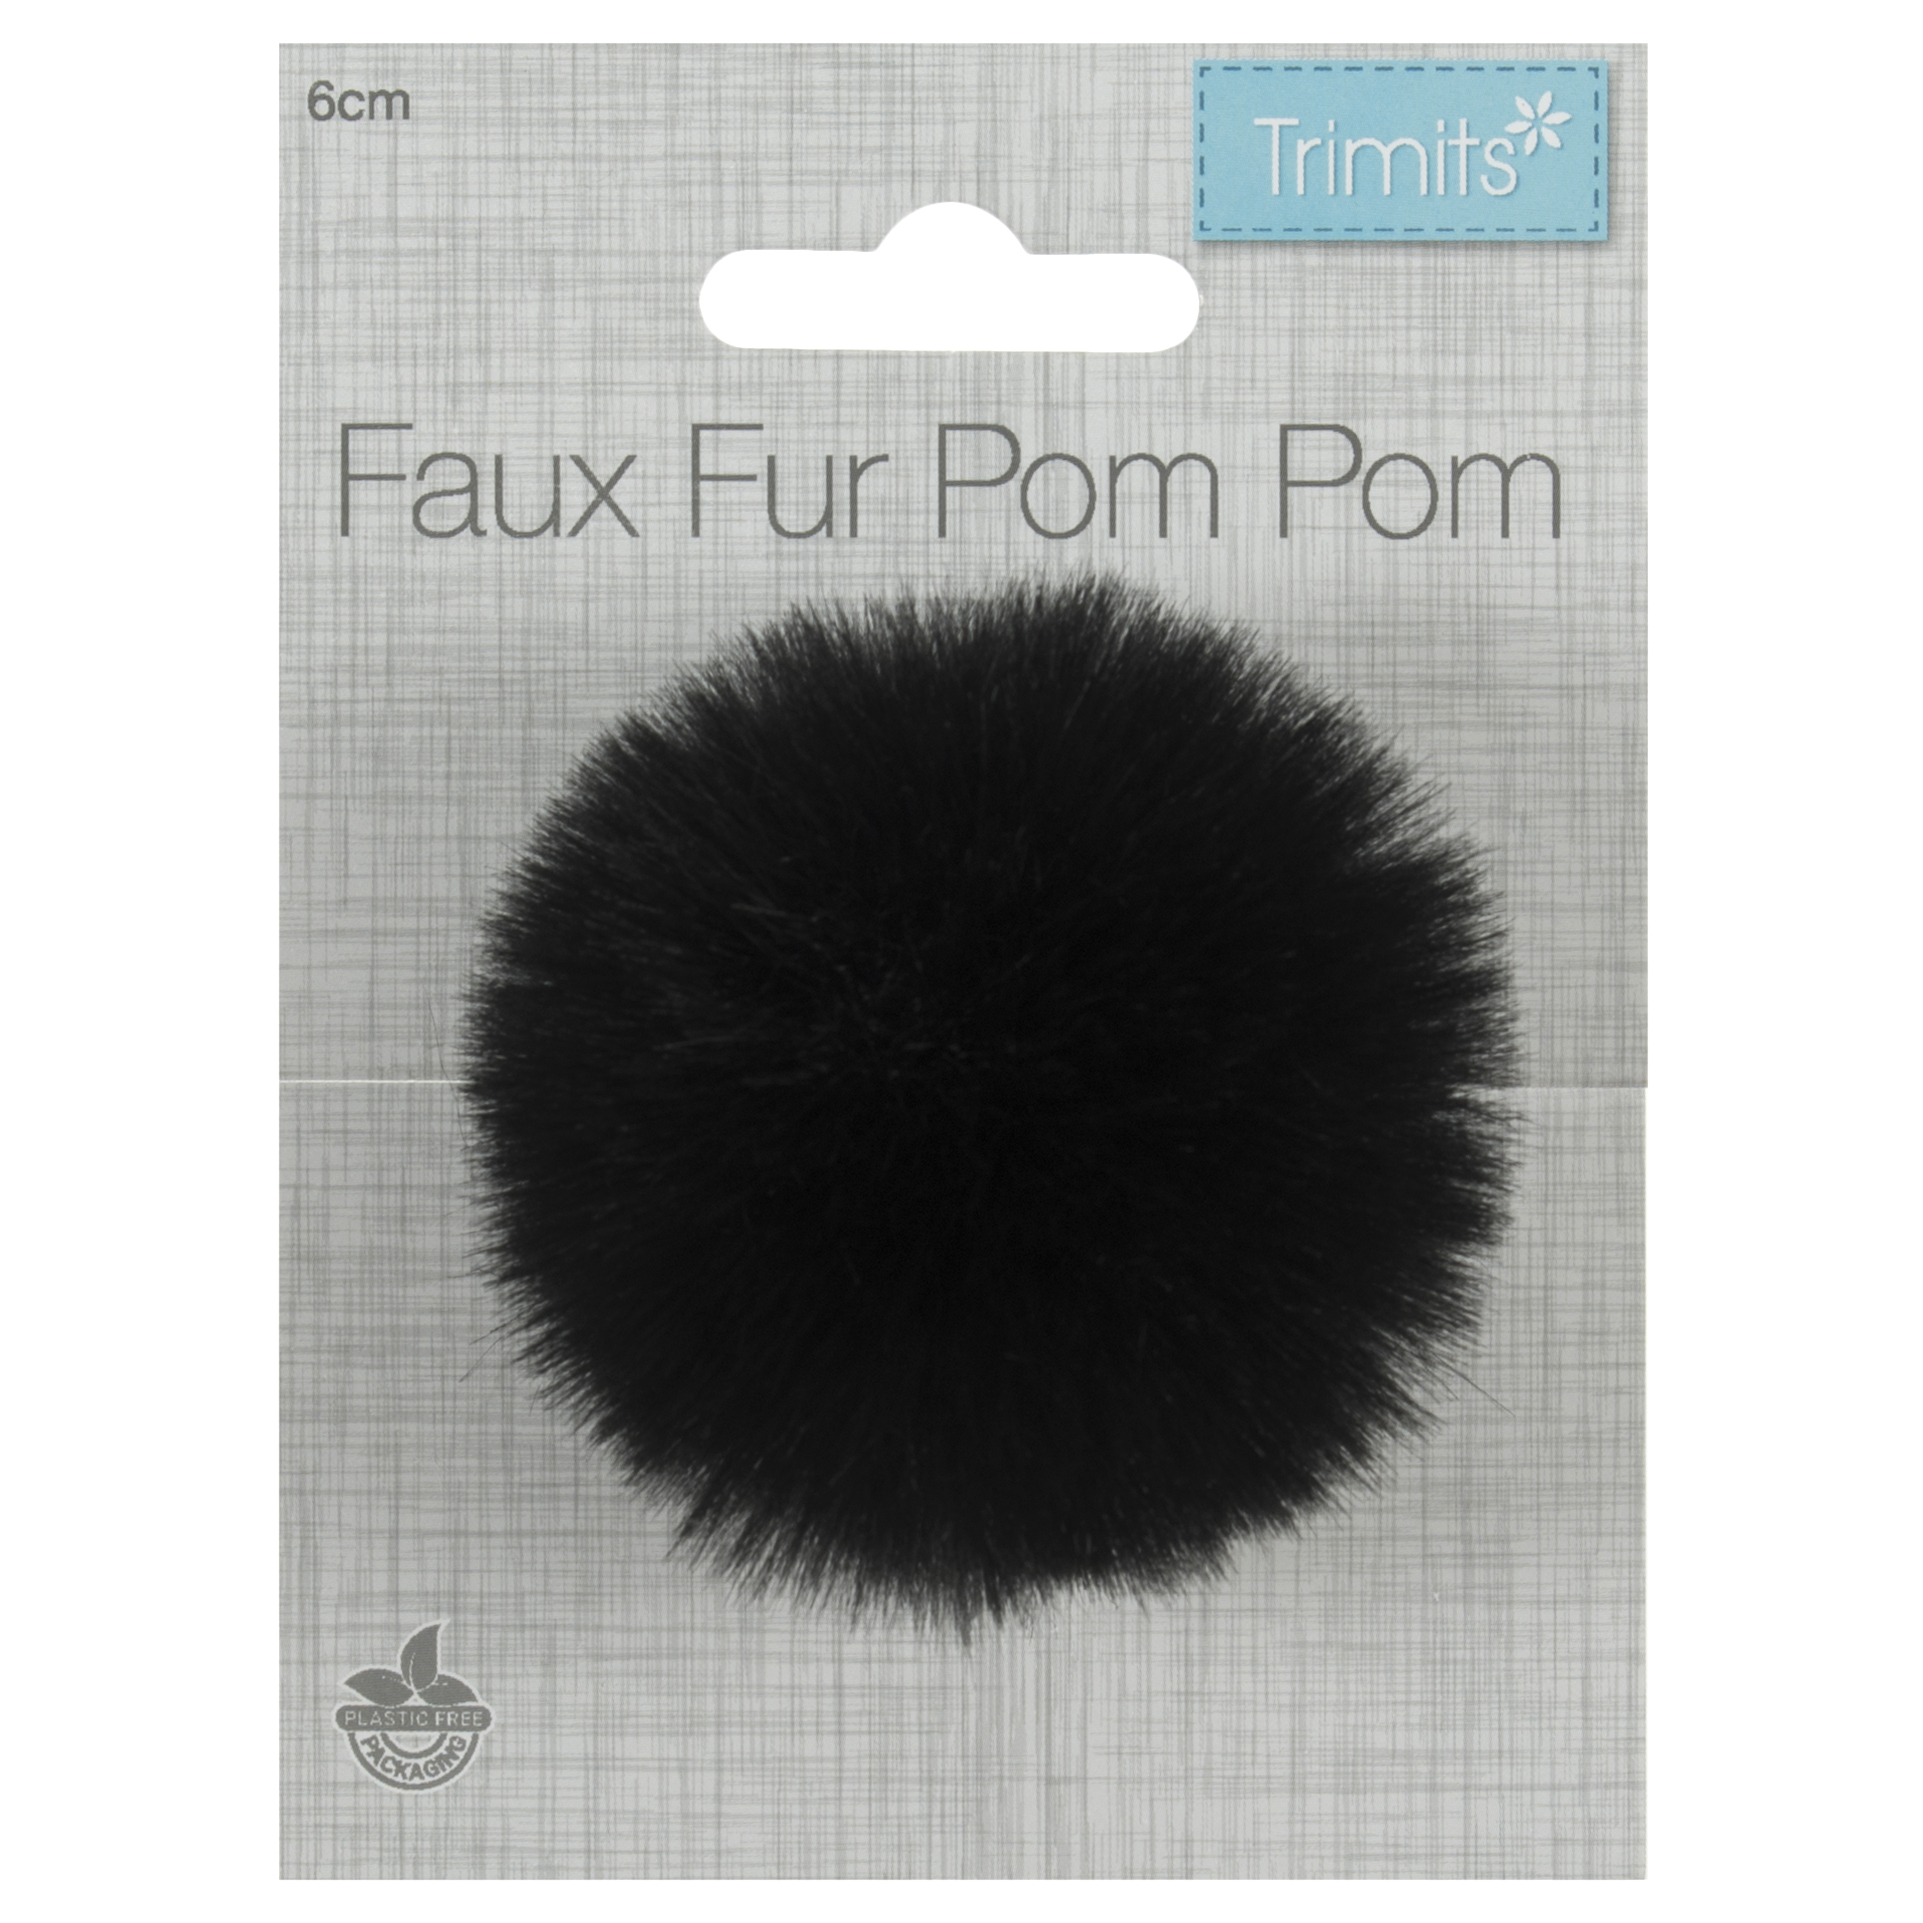 Trimits Faux Fur Pom Pom - Black (6cm)